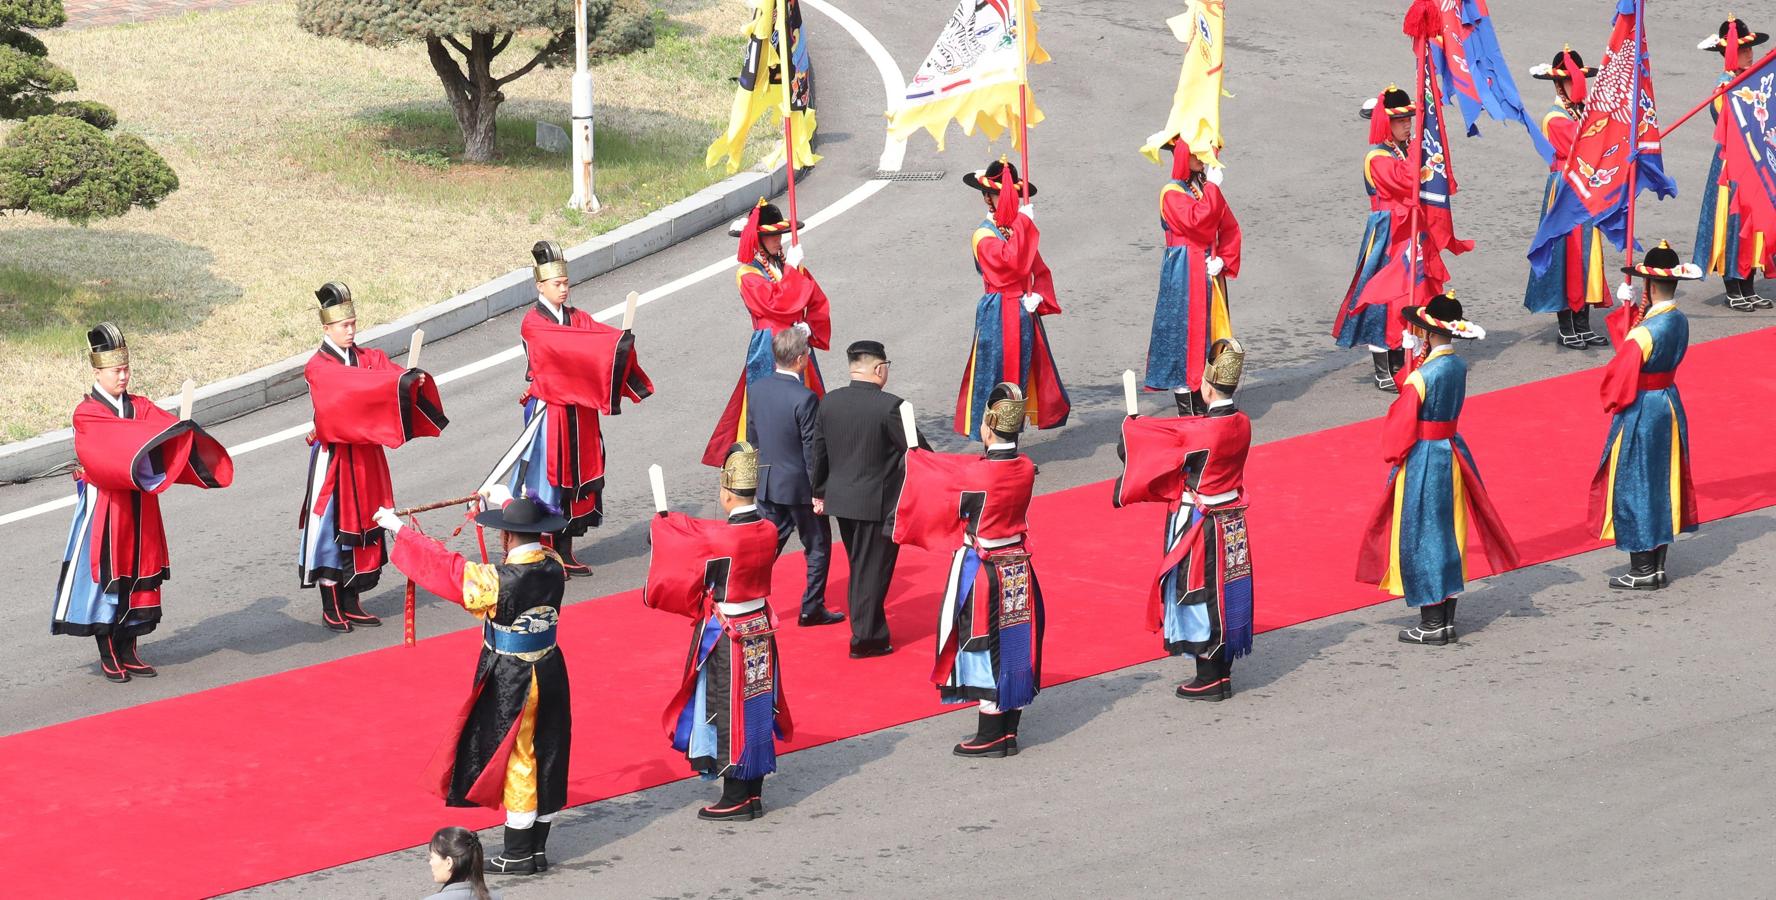 La cumbre histórica entre Corea del Norte y Corea del Sur, en imágenes